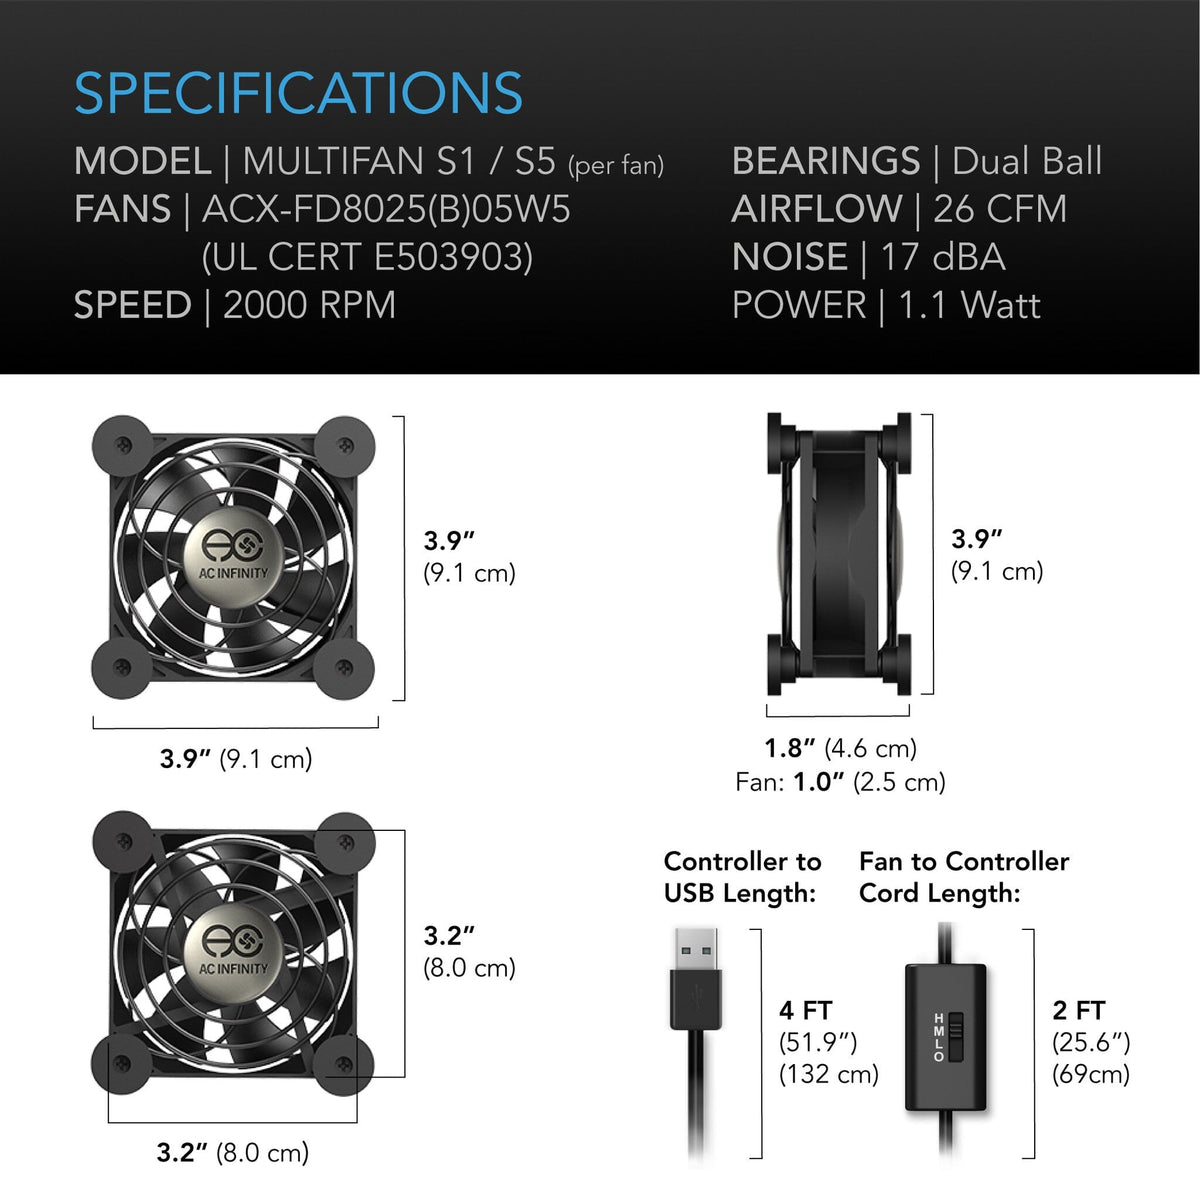 Multifan S5 Specifications 2 fans in one